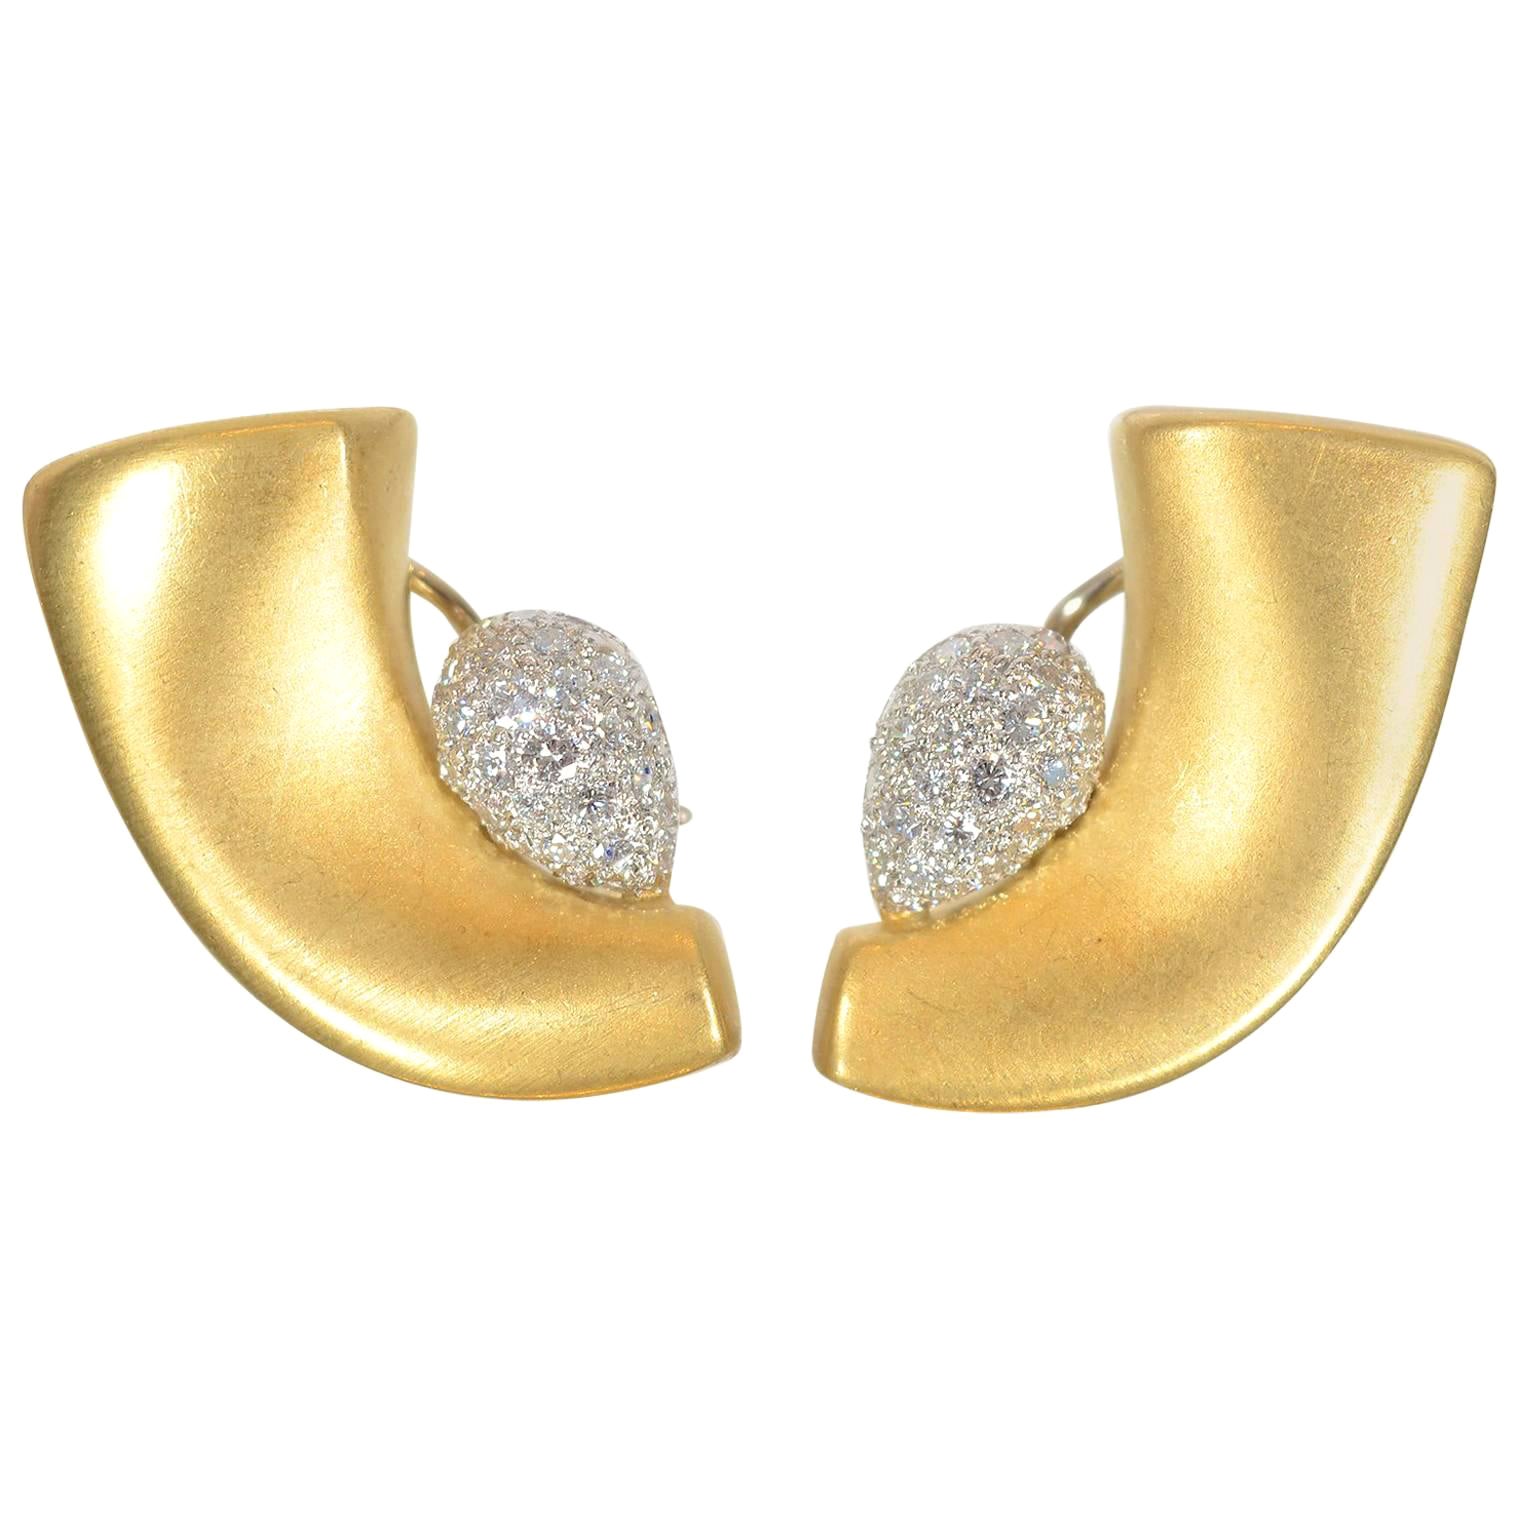 Marlene Stowe Boucles d'oreilles en forme de croissant avec diamants pavés